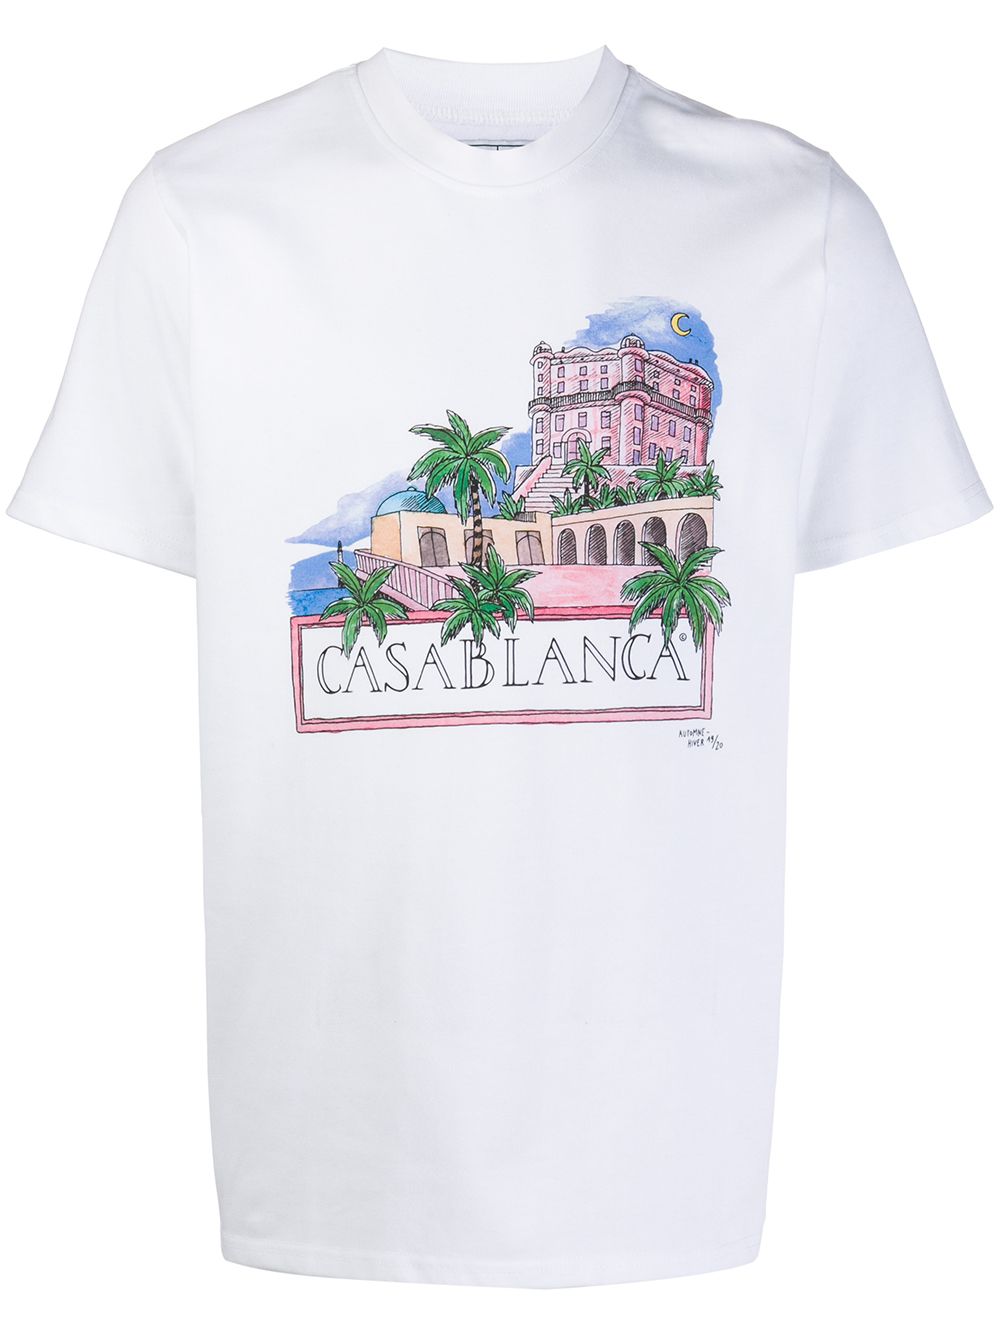 фото Casablanca футболка с графичным принтом